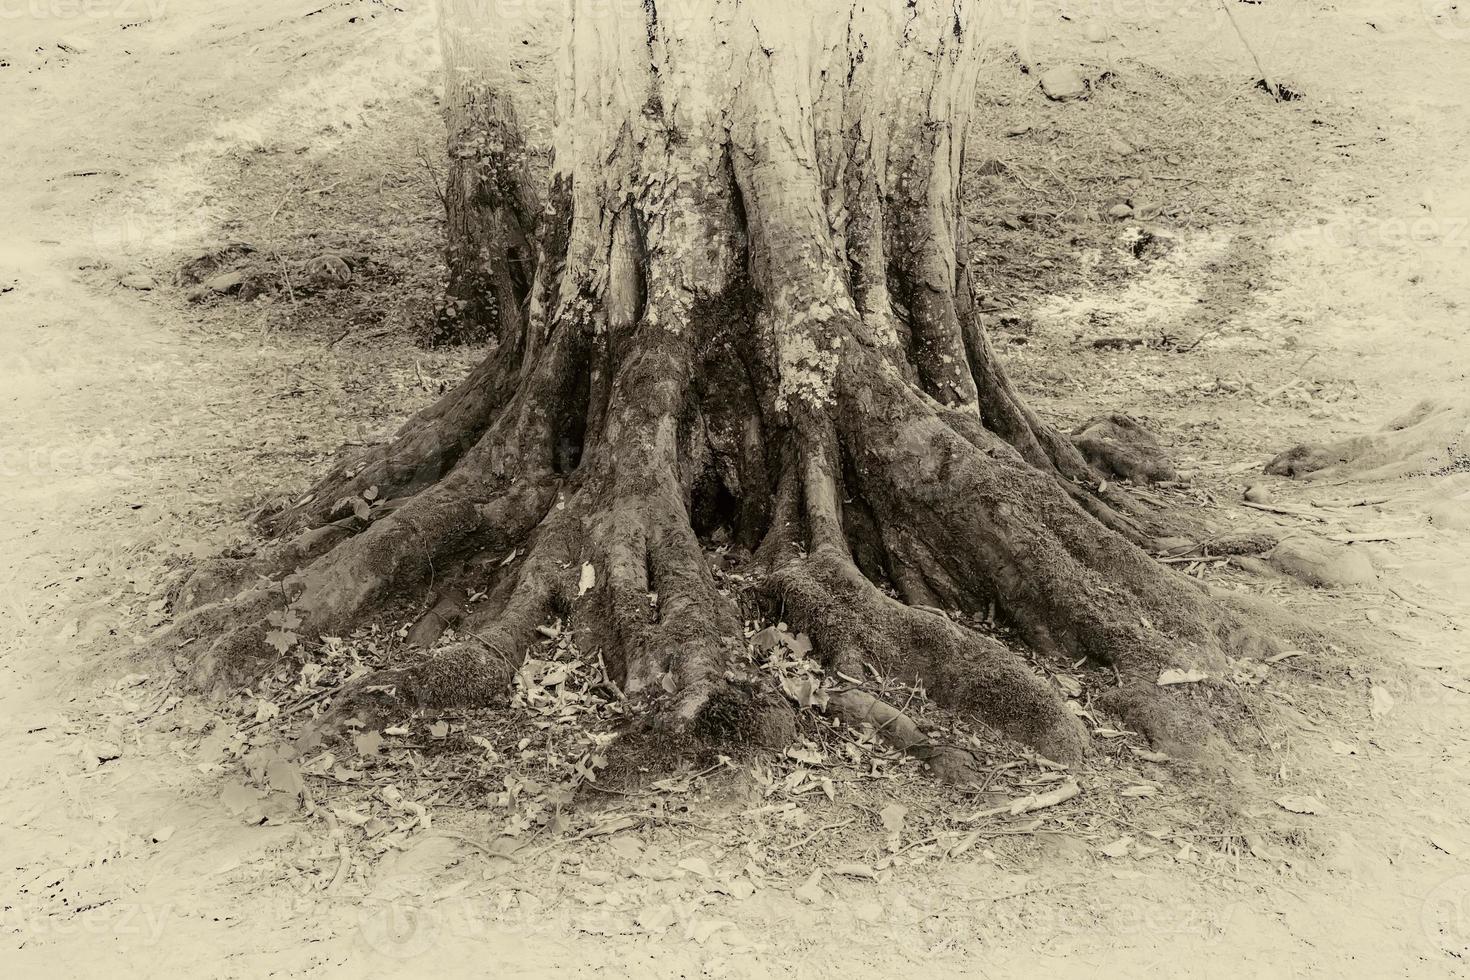 ancien photo de une arbre les racines dans une forêt. proche en haut